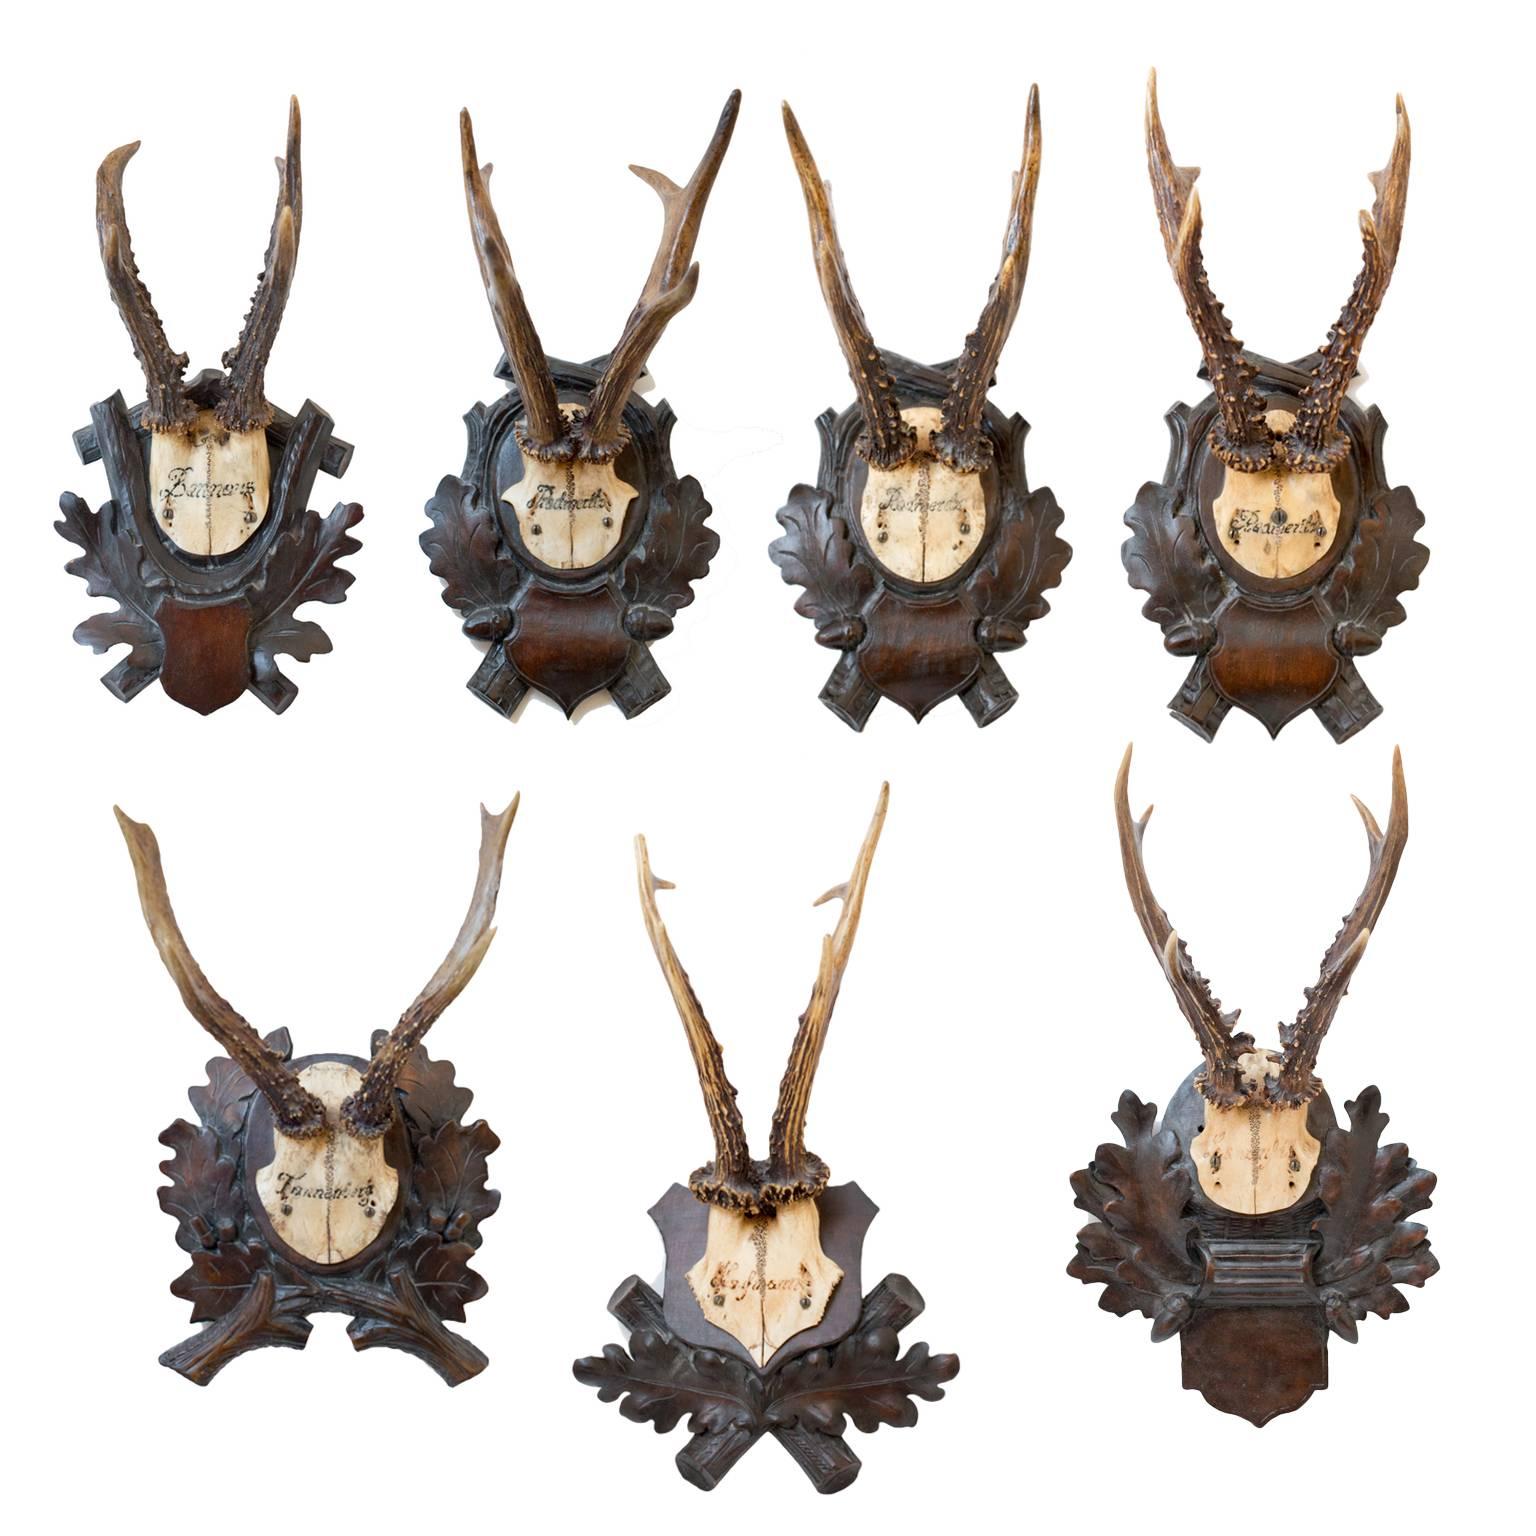 19th Century Habsburg Roe Deer Trophies from Eckartsau Castle, Austria